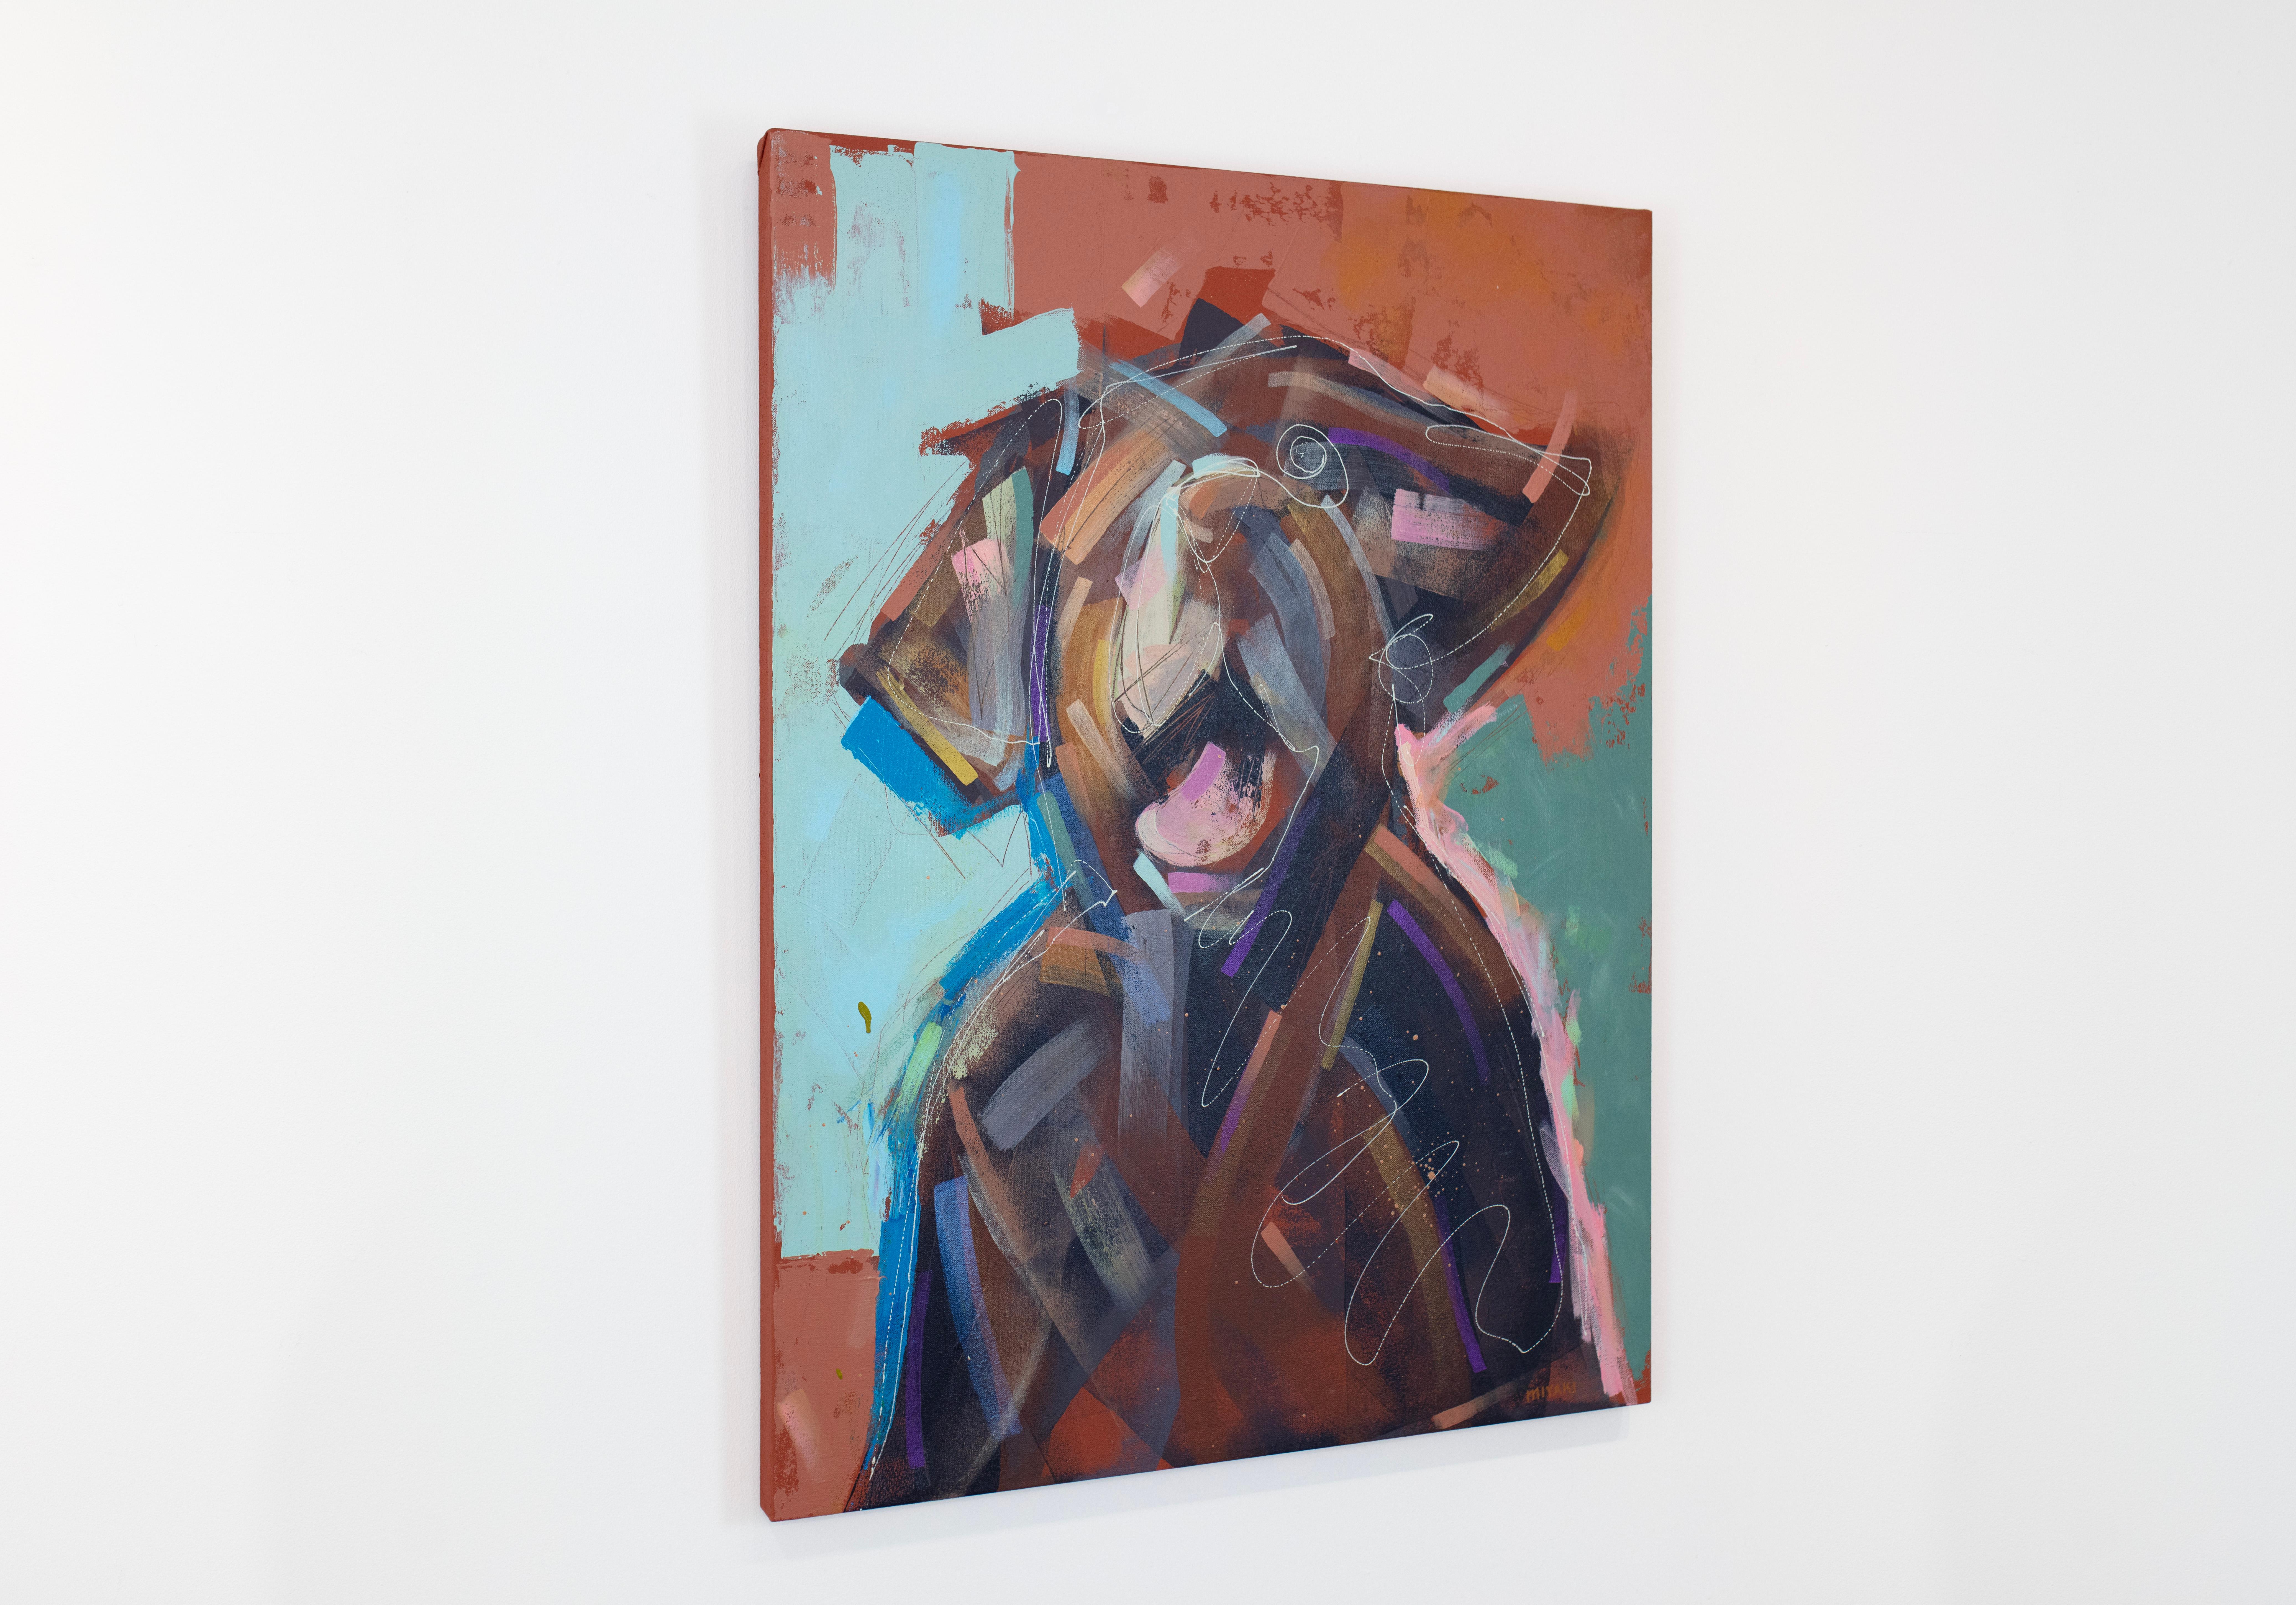 Cette peinture abstraite d'un labrador brun se caractérise par un style libre et énergique et des couleurs vibrantes. L'artiste superpose de larges coups de pinceau et des lignes fines et tourbillonnantes pour créer la forme du chien, sur un fond